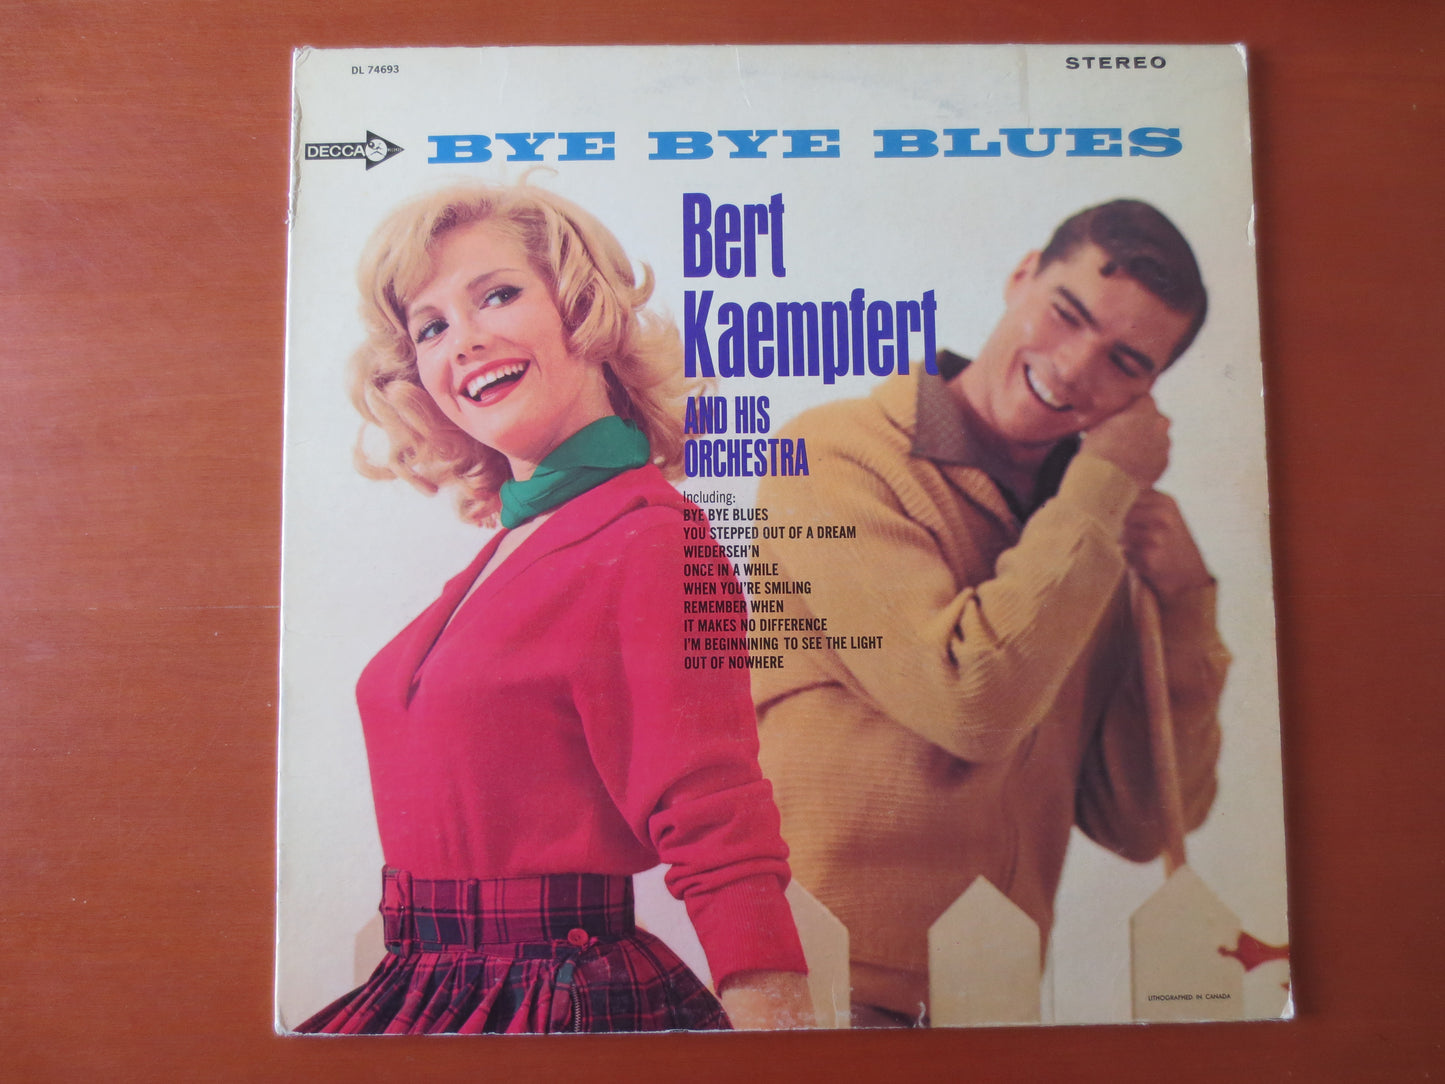 BERT KAEMPFERT, BYE Bye Blues, Bert Kaempfert Album, Jazz Records, Jazz Album, Bert Kaempfert Music, lps, 1965 Records